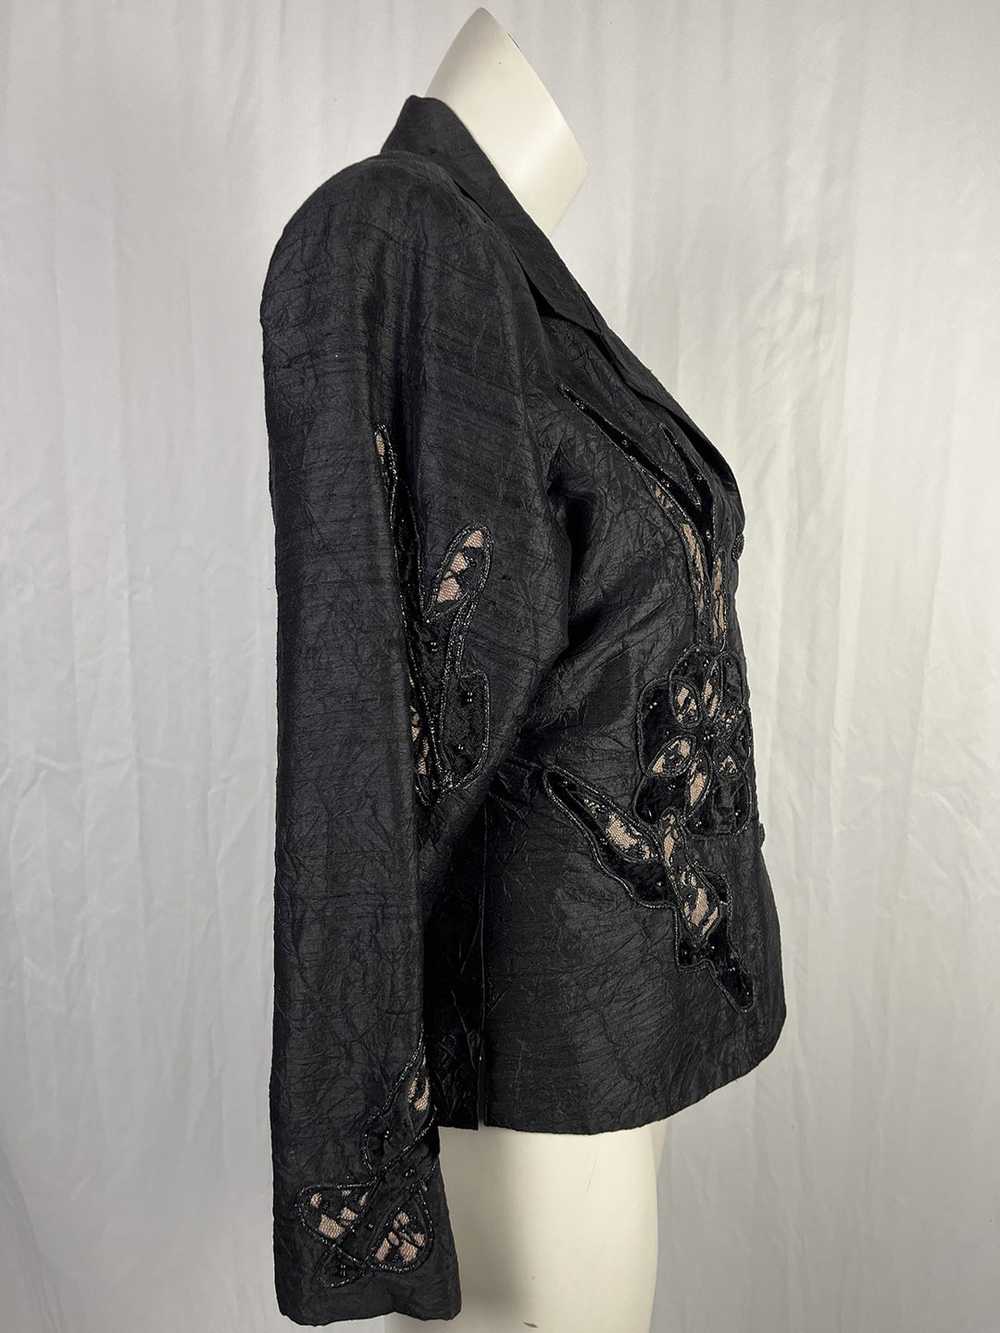 Anage Size 14 Black & Beige Floral Jacket - image 3